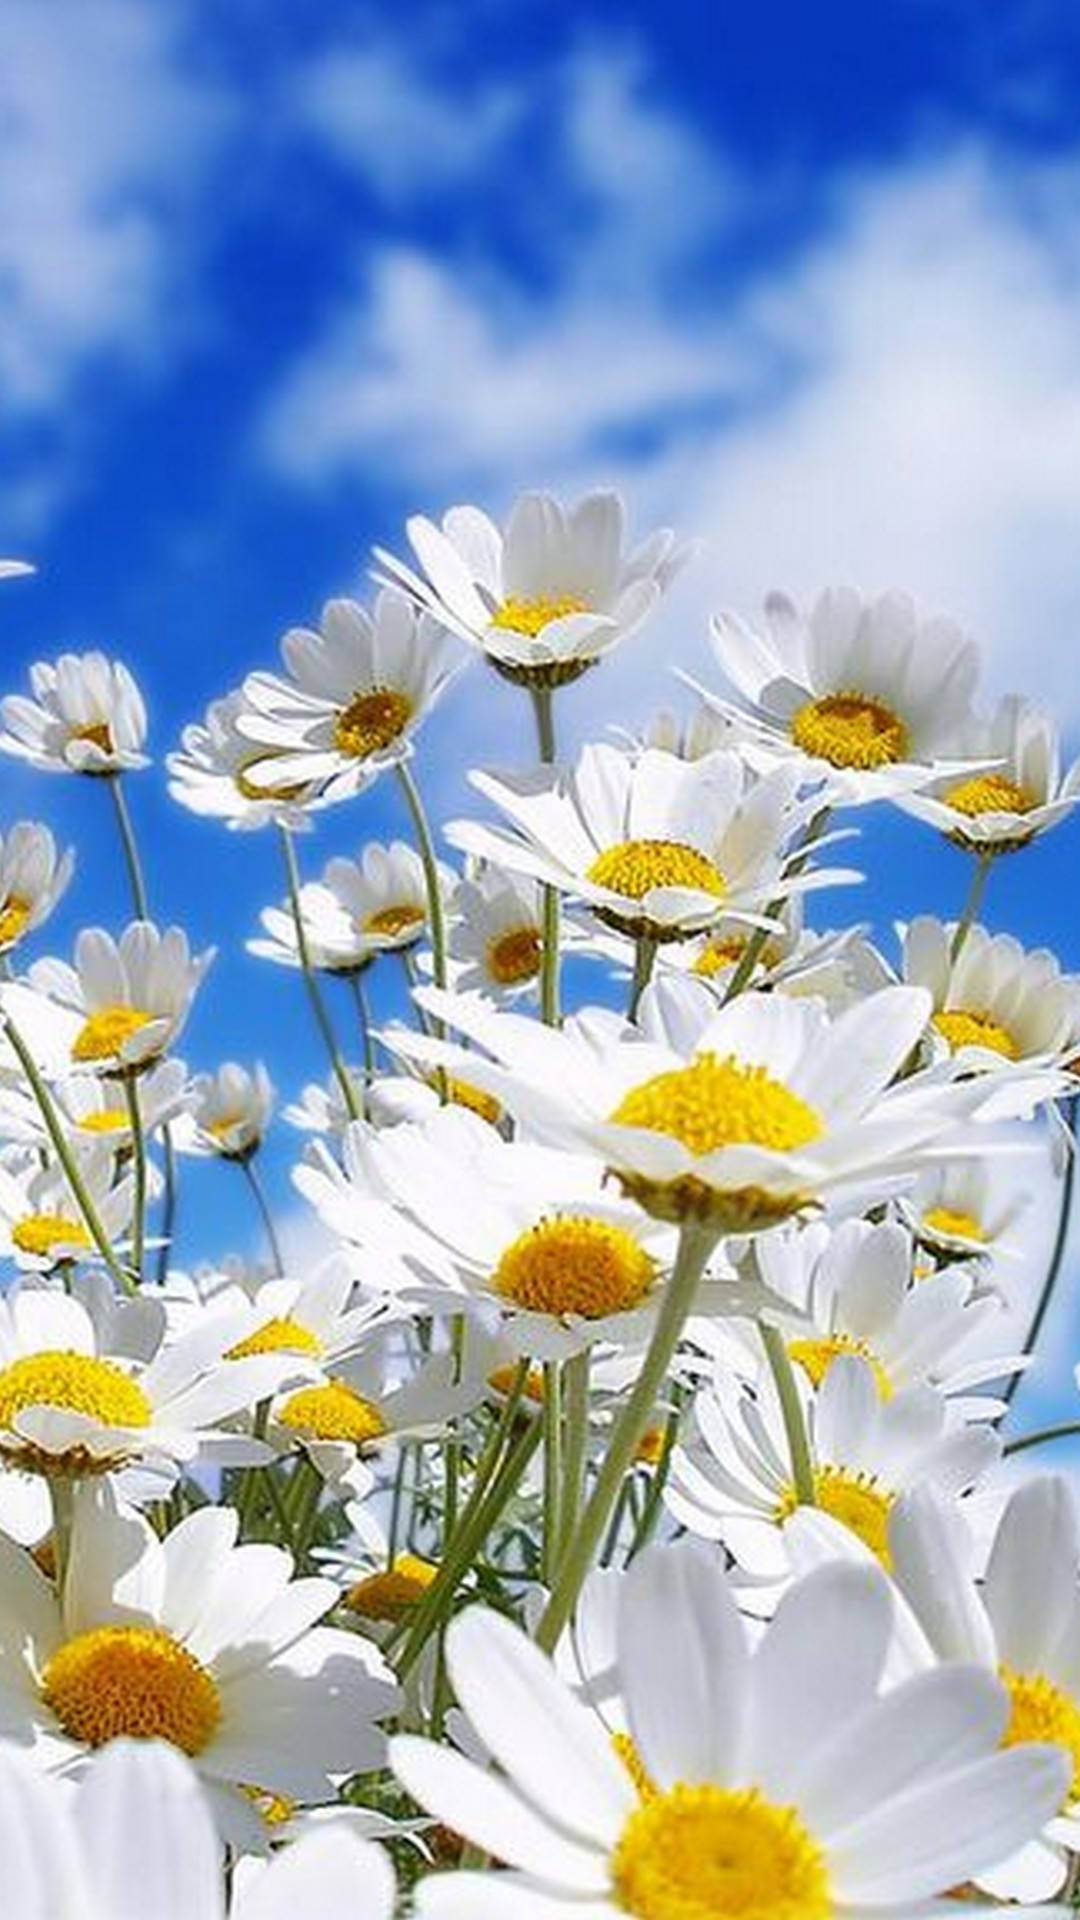 Hình Nền Hoa Mùa Xuân (Spring Flower Iphone Background): Nếu bạn là một người yêu thích hoa và mùa xuân, thì hình nền hoa mùa xuân sẽ làm hài lòng bạn. Với những bông hoa tươi tắn và màu sắc sặc sỡ, chúng sẽ mang lại một không gian sống động trên điện thoại của bạn. 